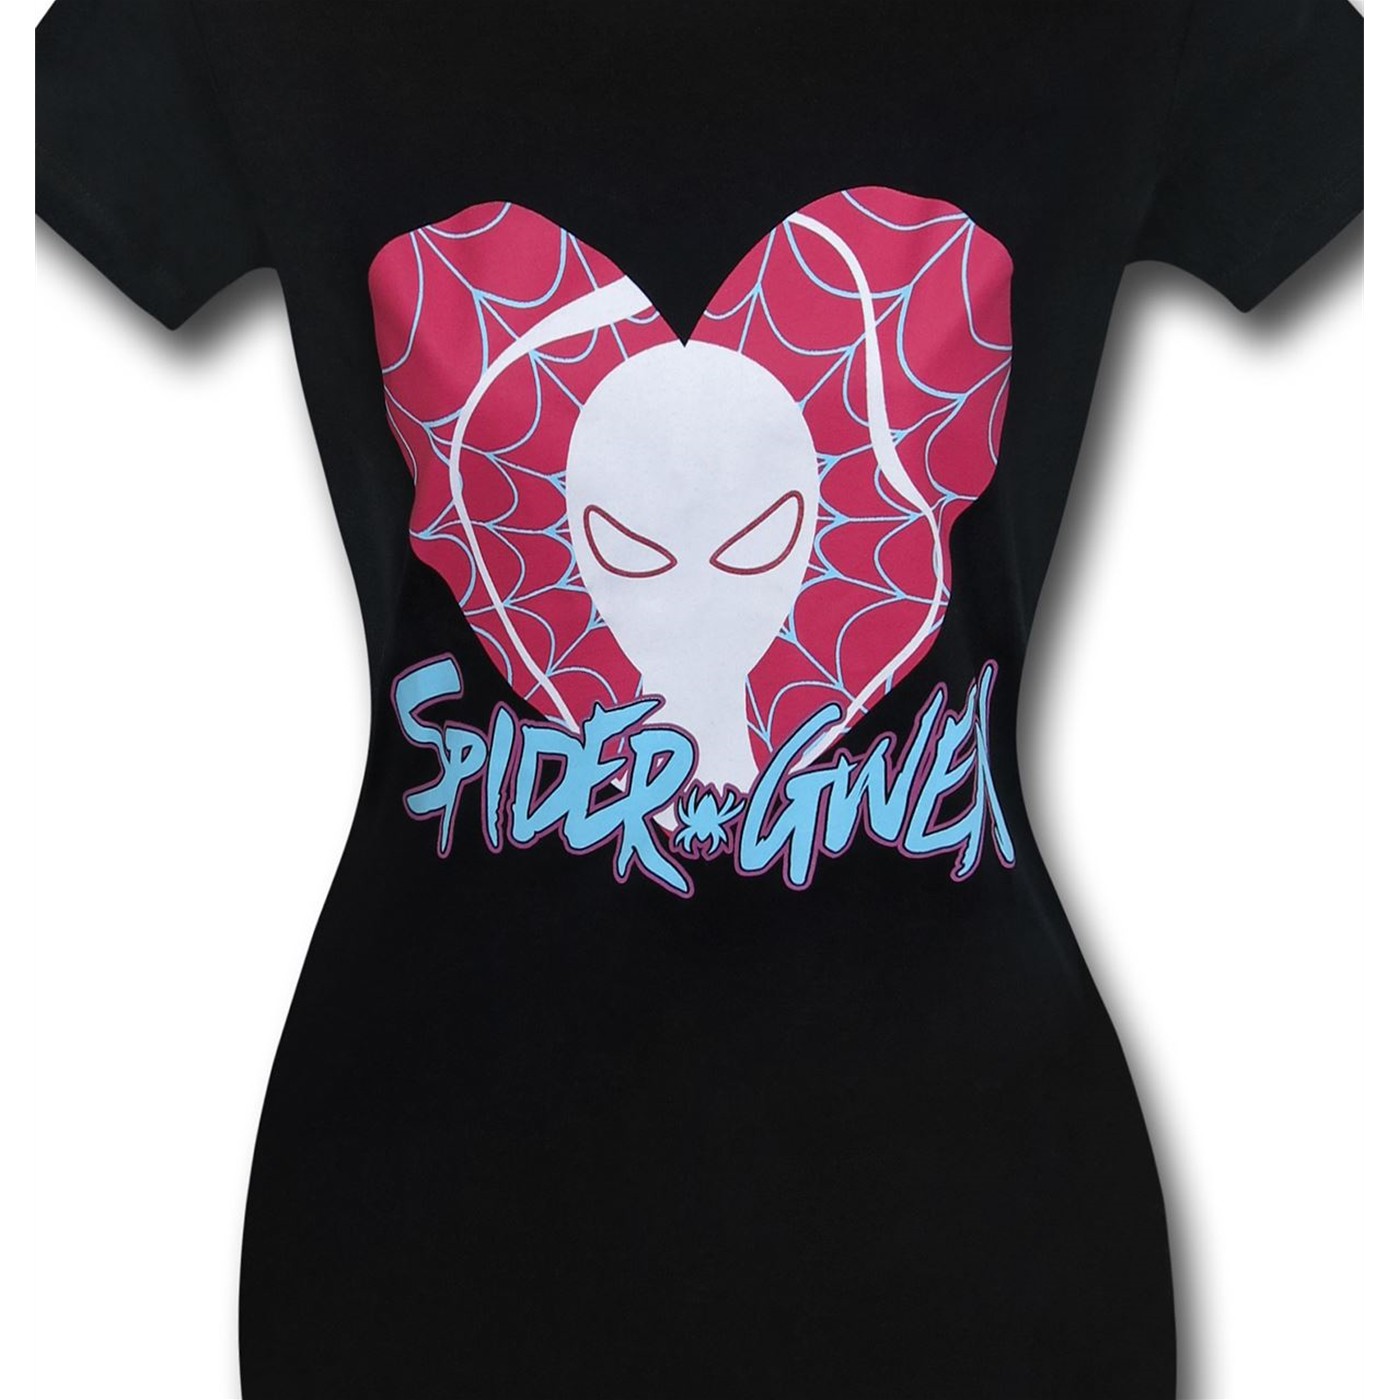 Spider-Gwen Heart Logo Womens T-Shirt